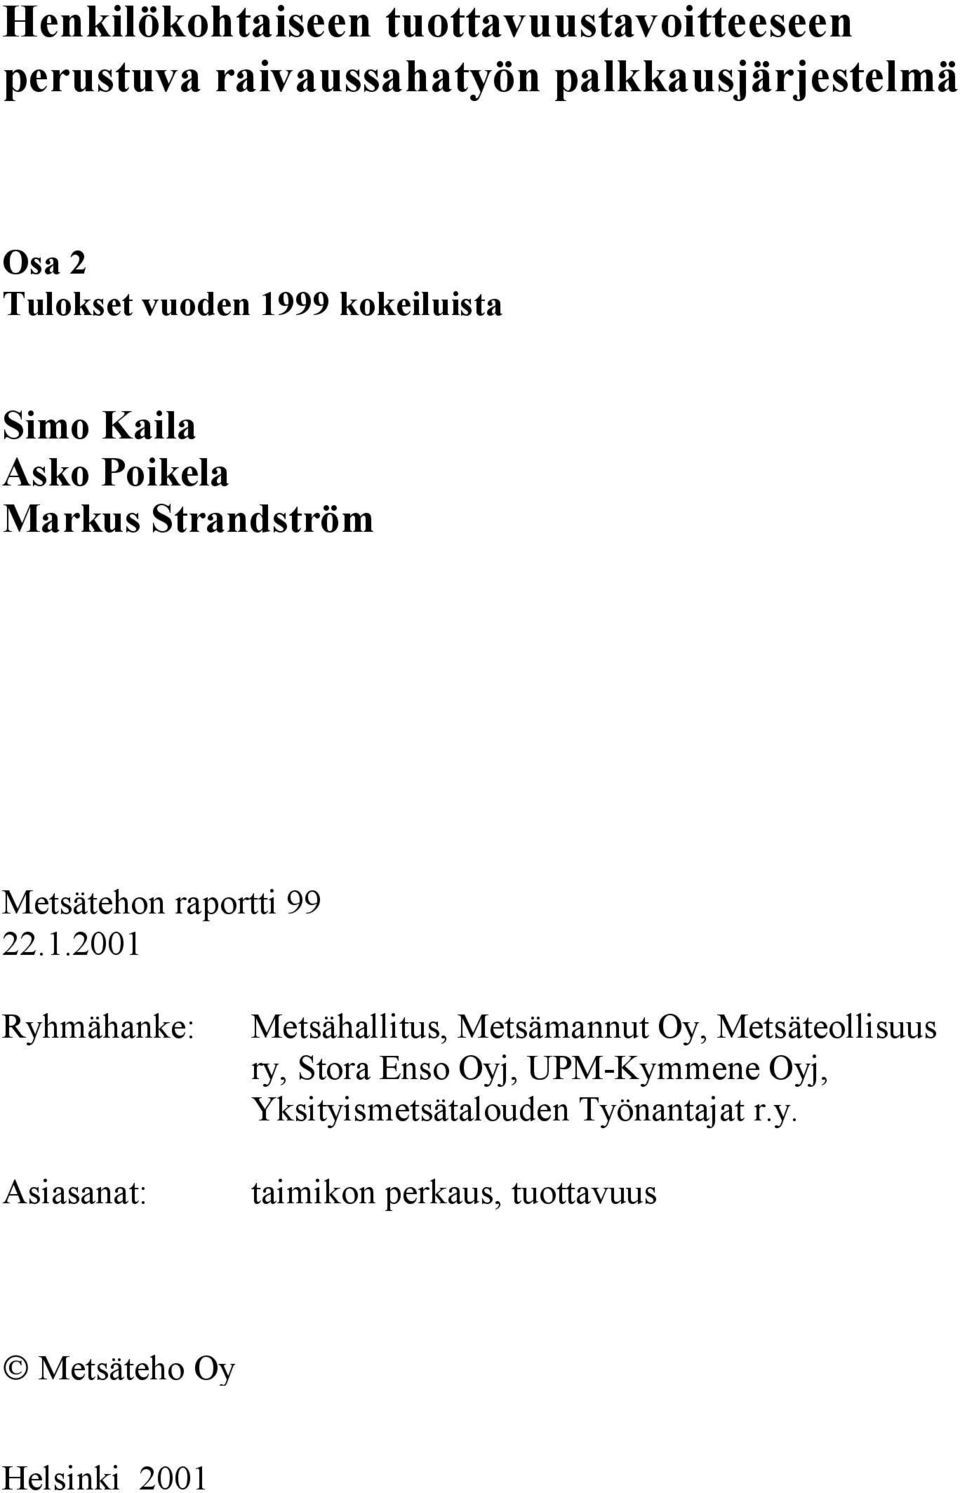 22.1.2001 Ryhmähanke: Asiasanat: Metsähallitus, Metsämannut Oy, Metsäteollisuus ry, Stora Enso Oyj,